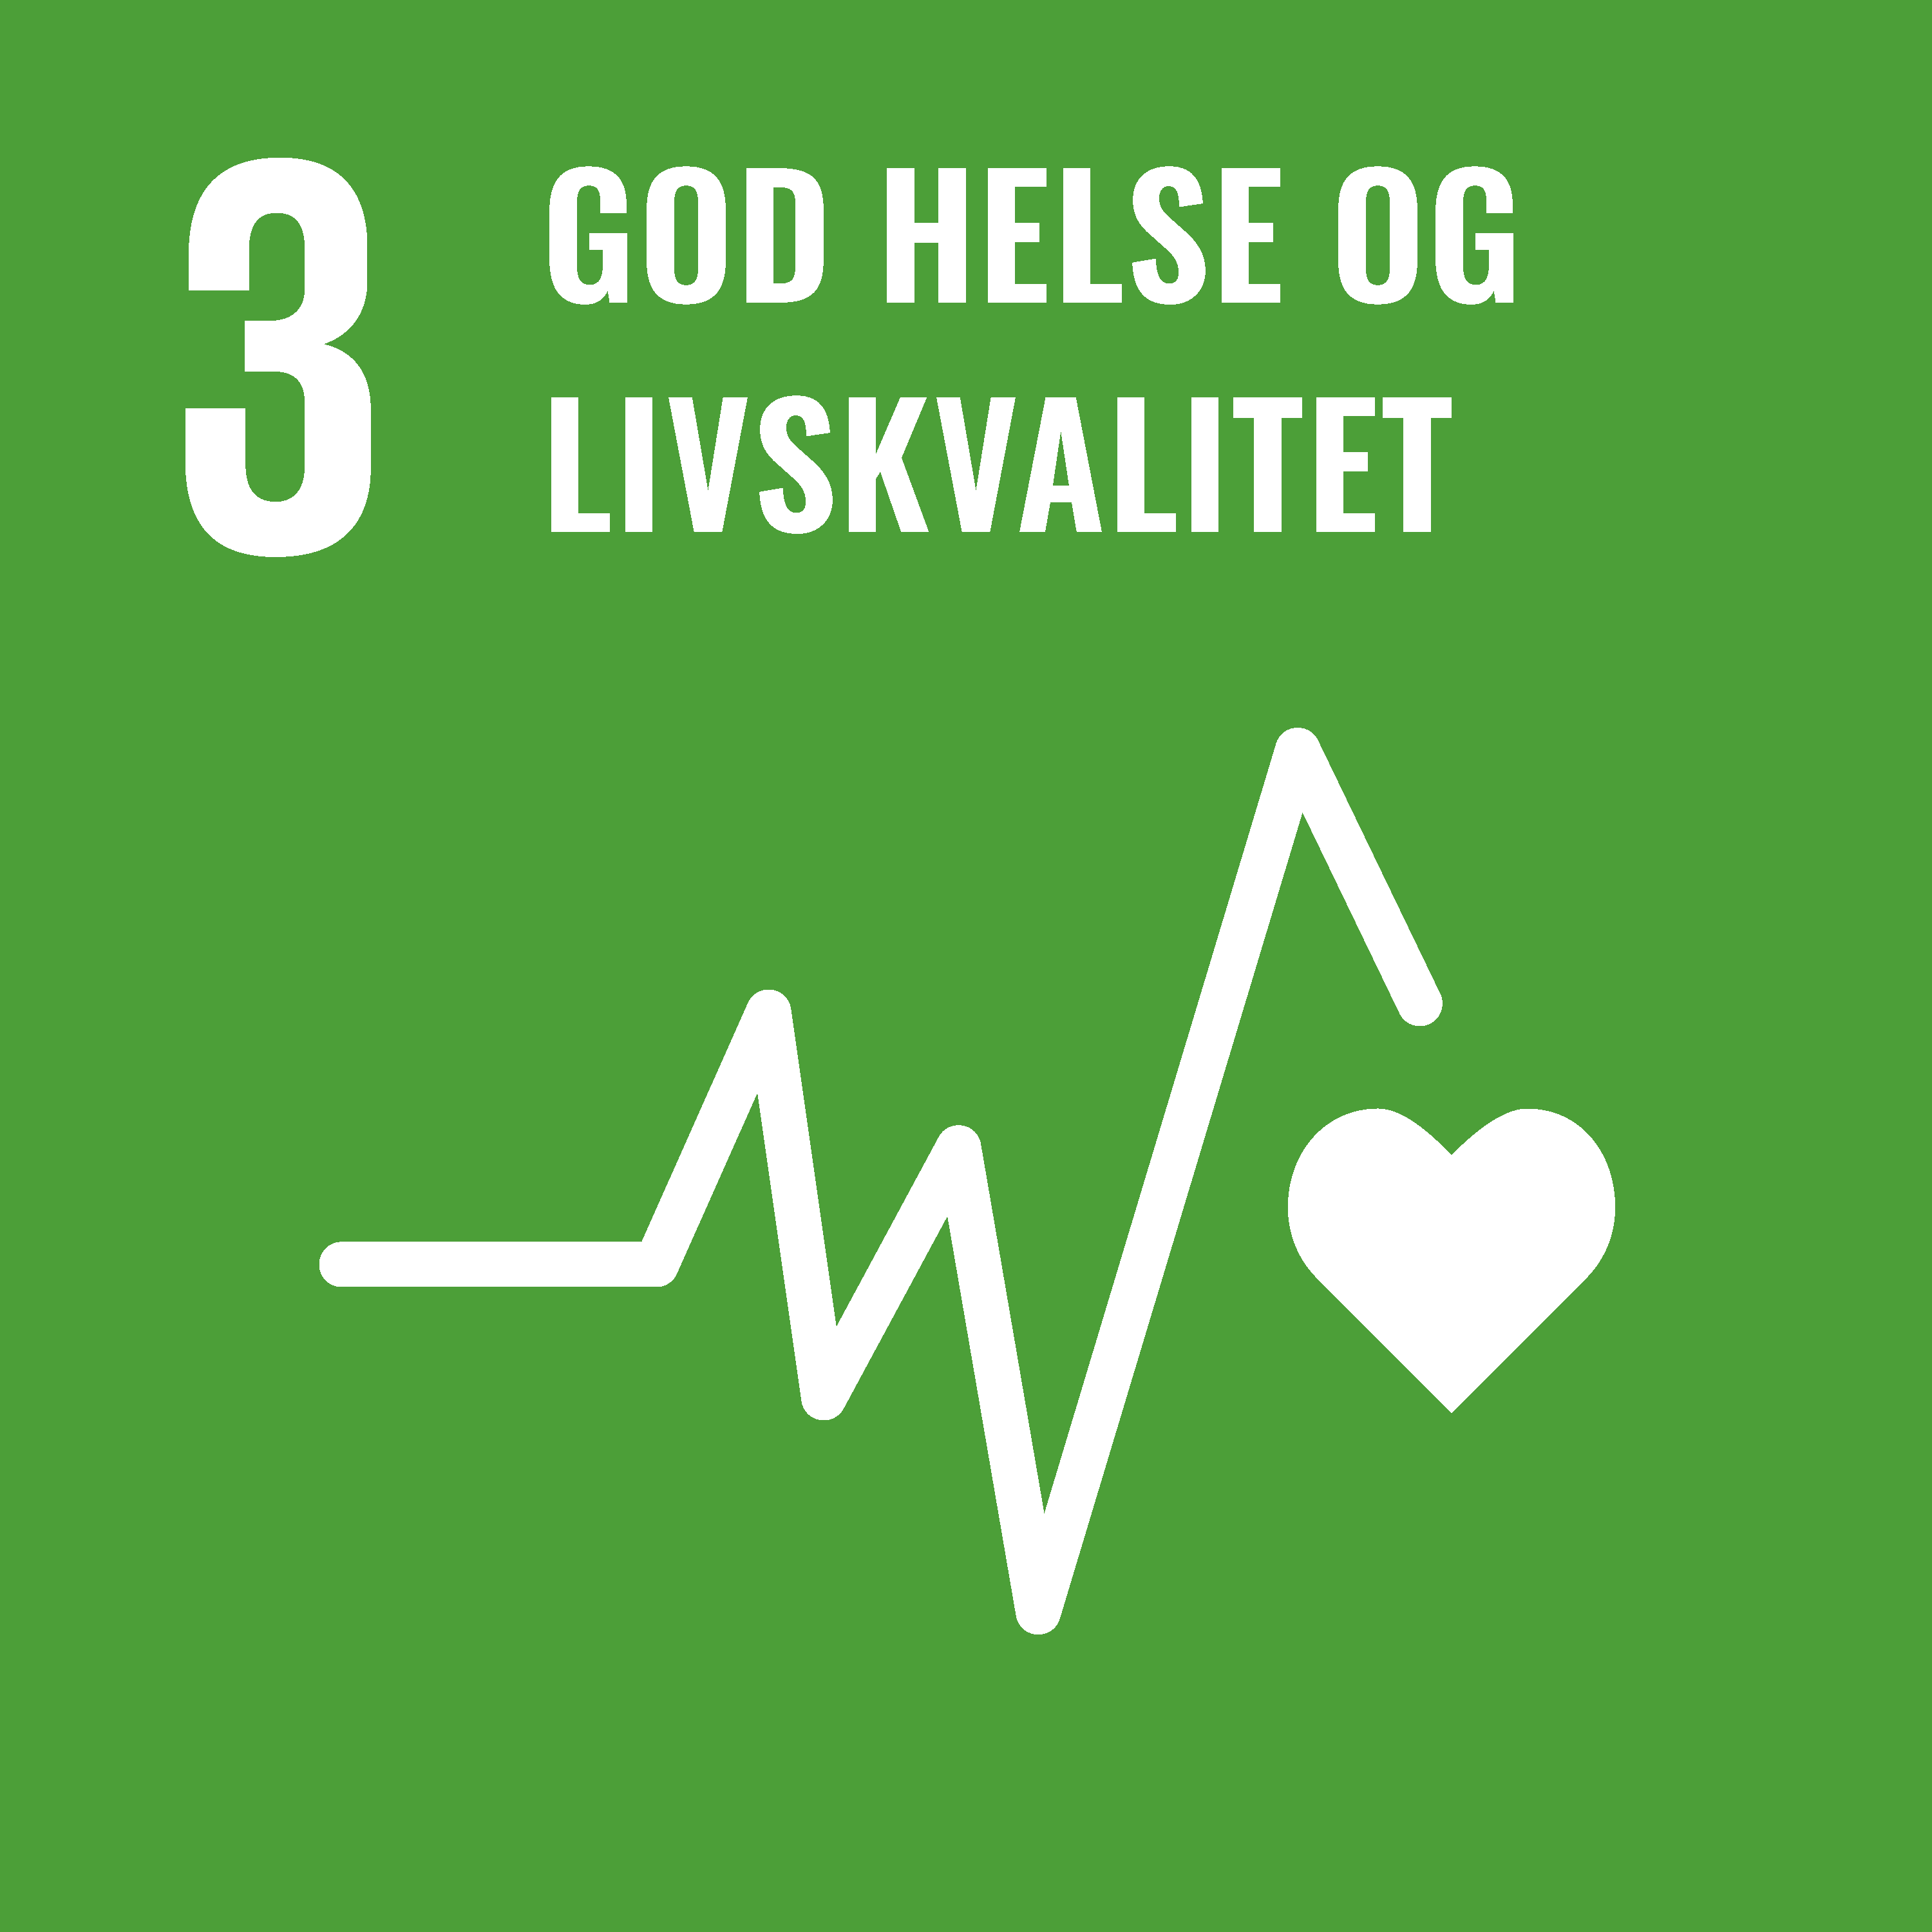 God helse og livskvalitet (SDG-3)